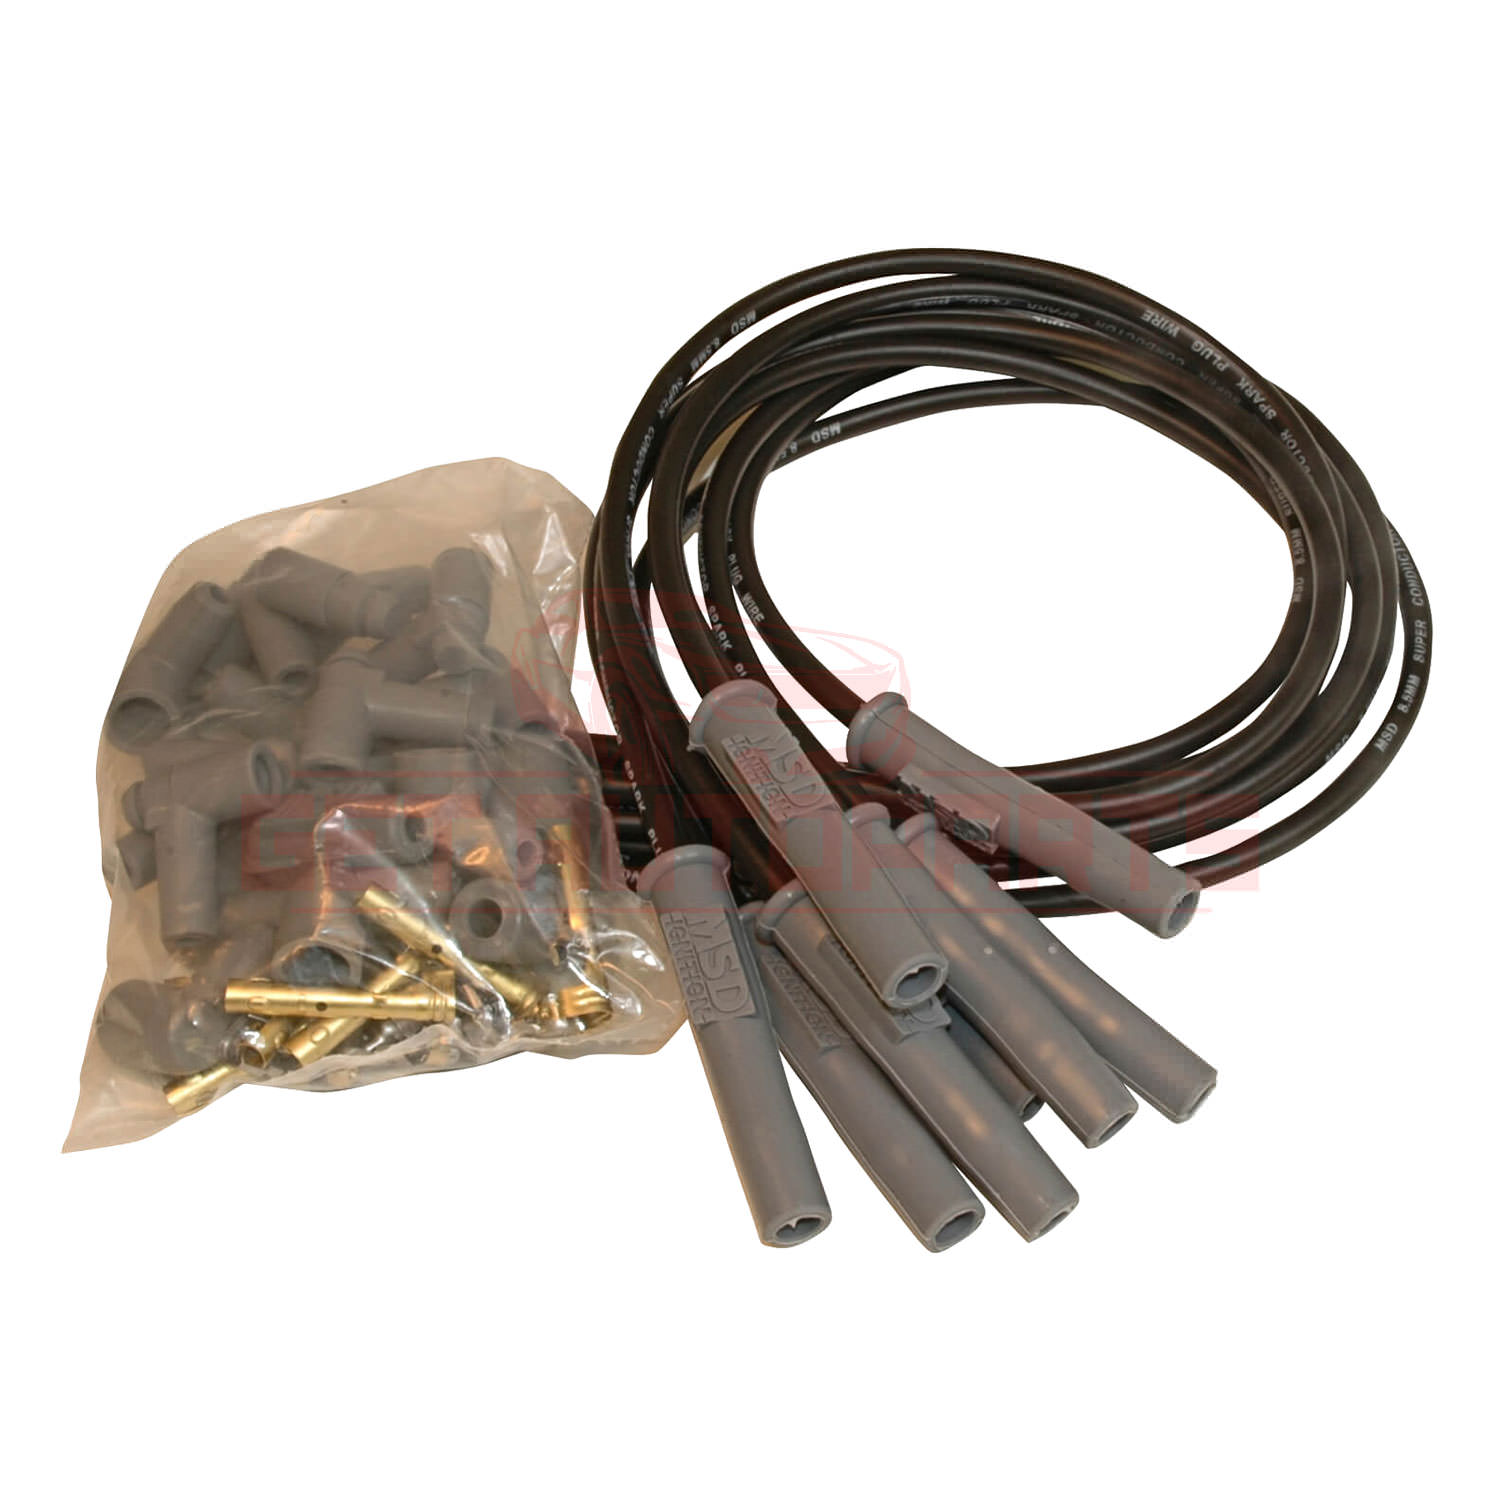 MSD Spark Plug Wire Set fits Pontiac Bonneville 1960-2005